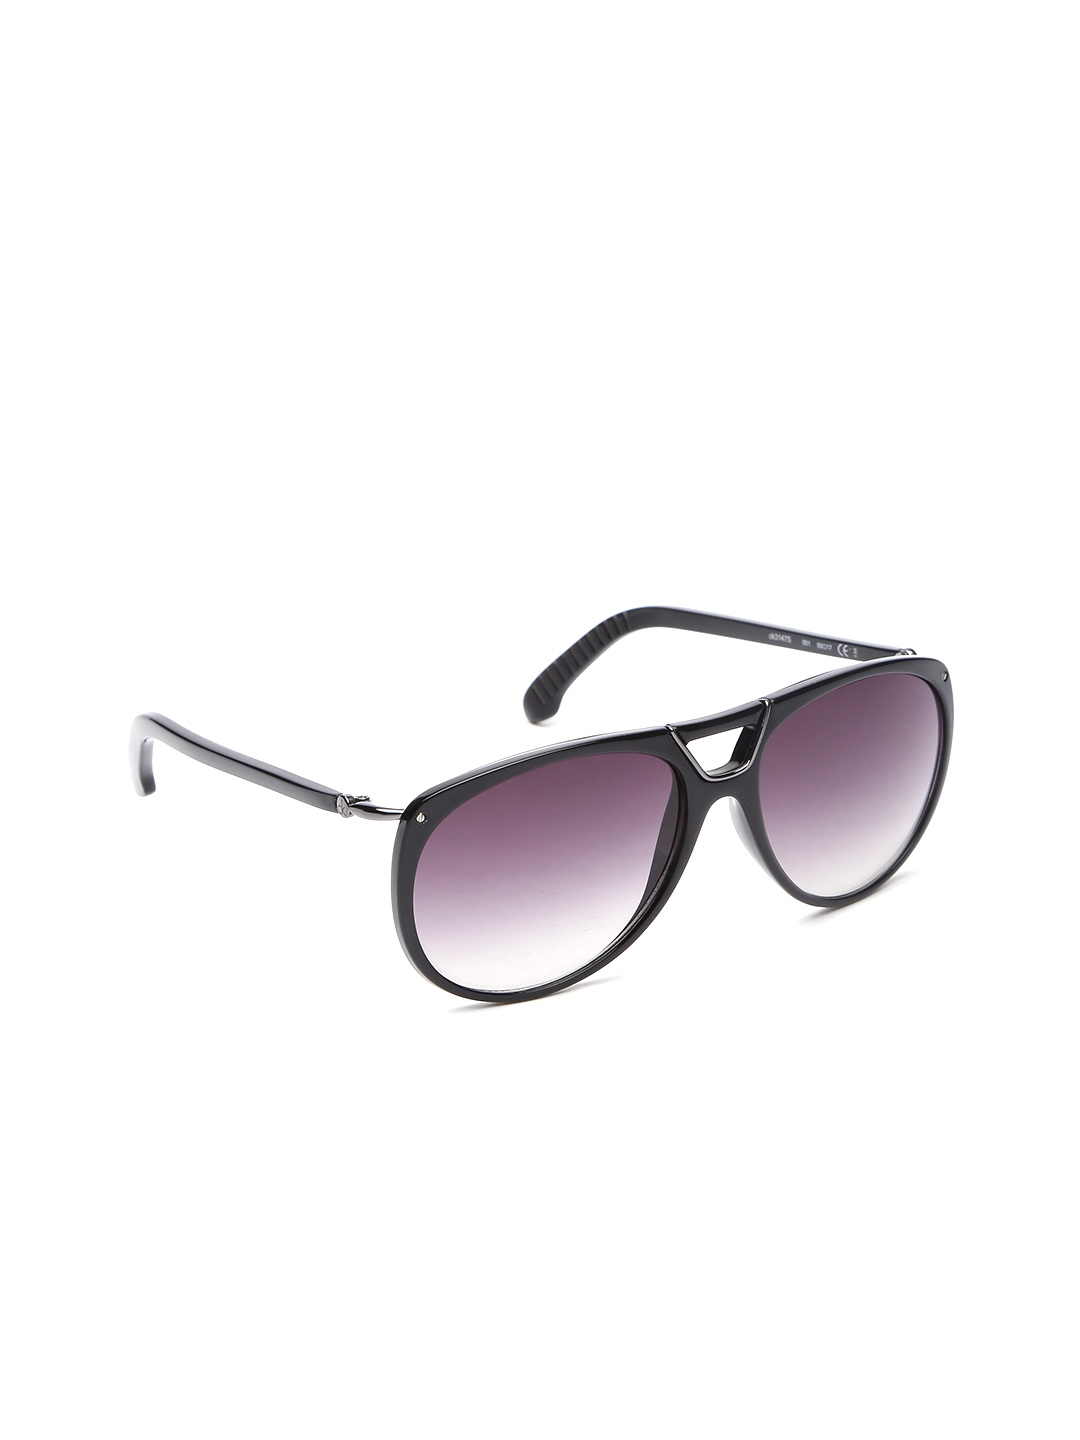 Buy Calvin Klein Men Oval Sunglasses 3147 001 - Sunglasses for Men ...